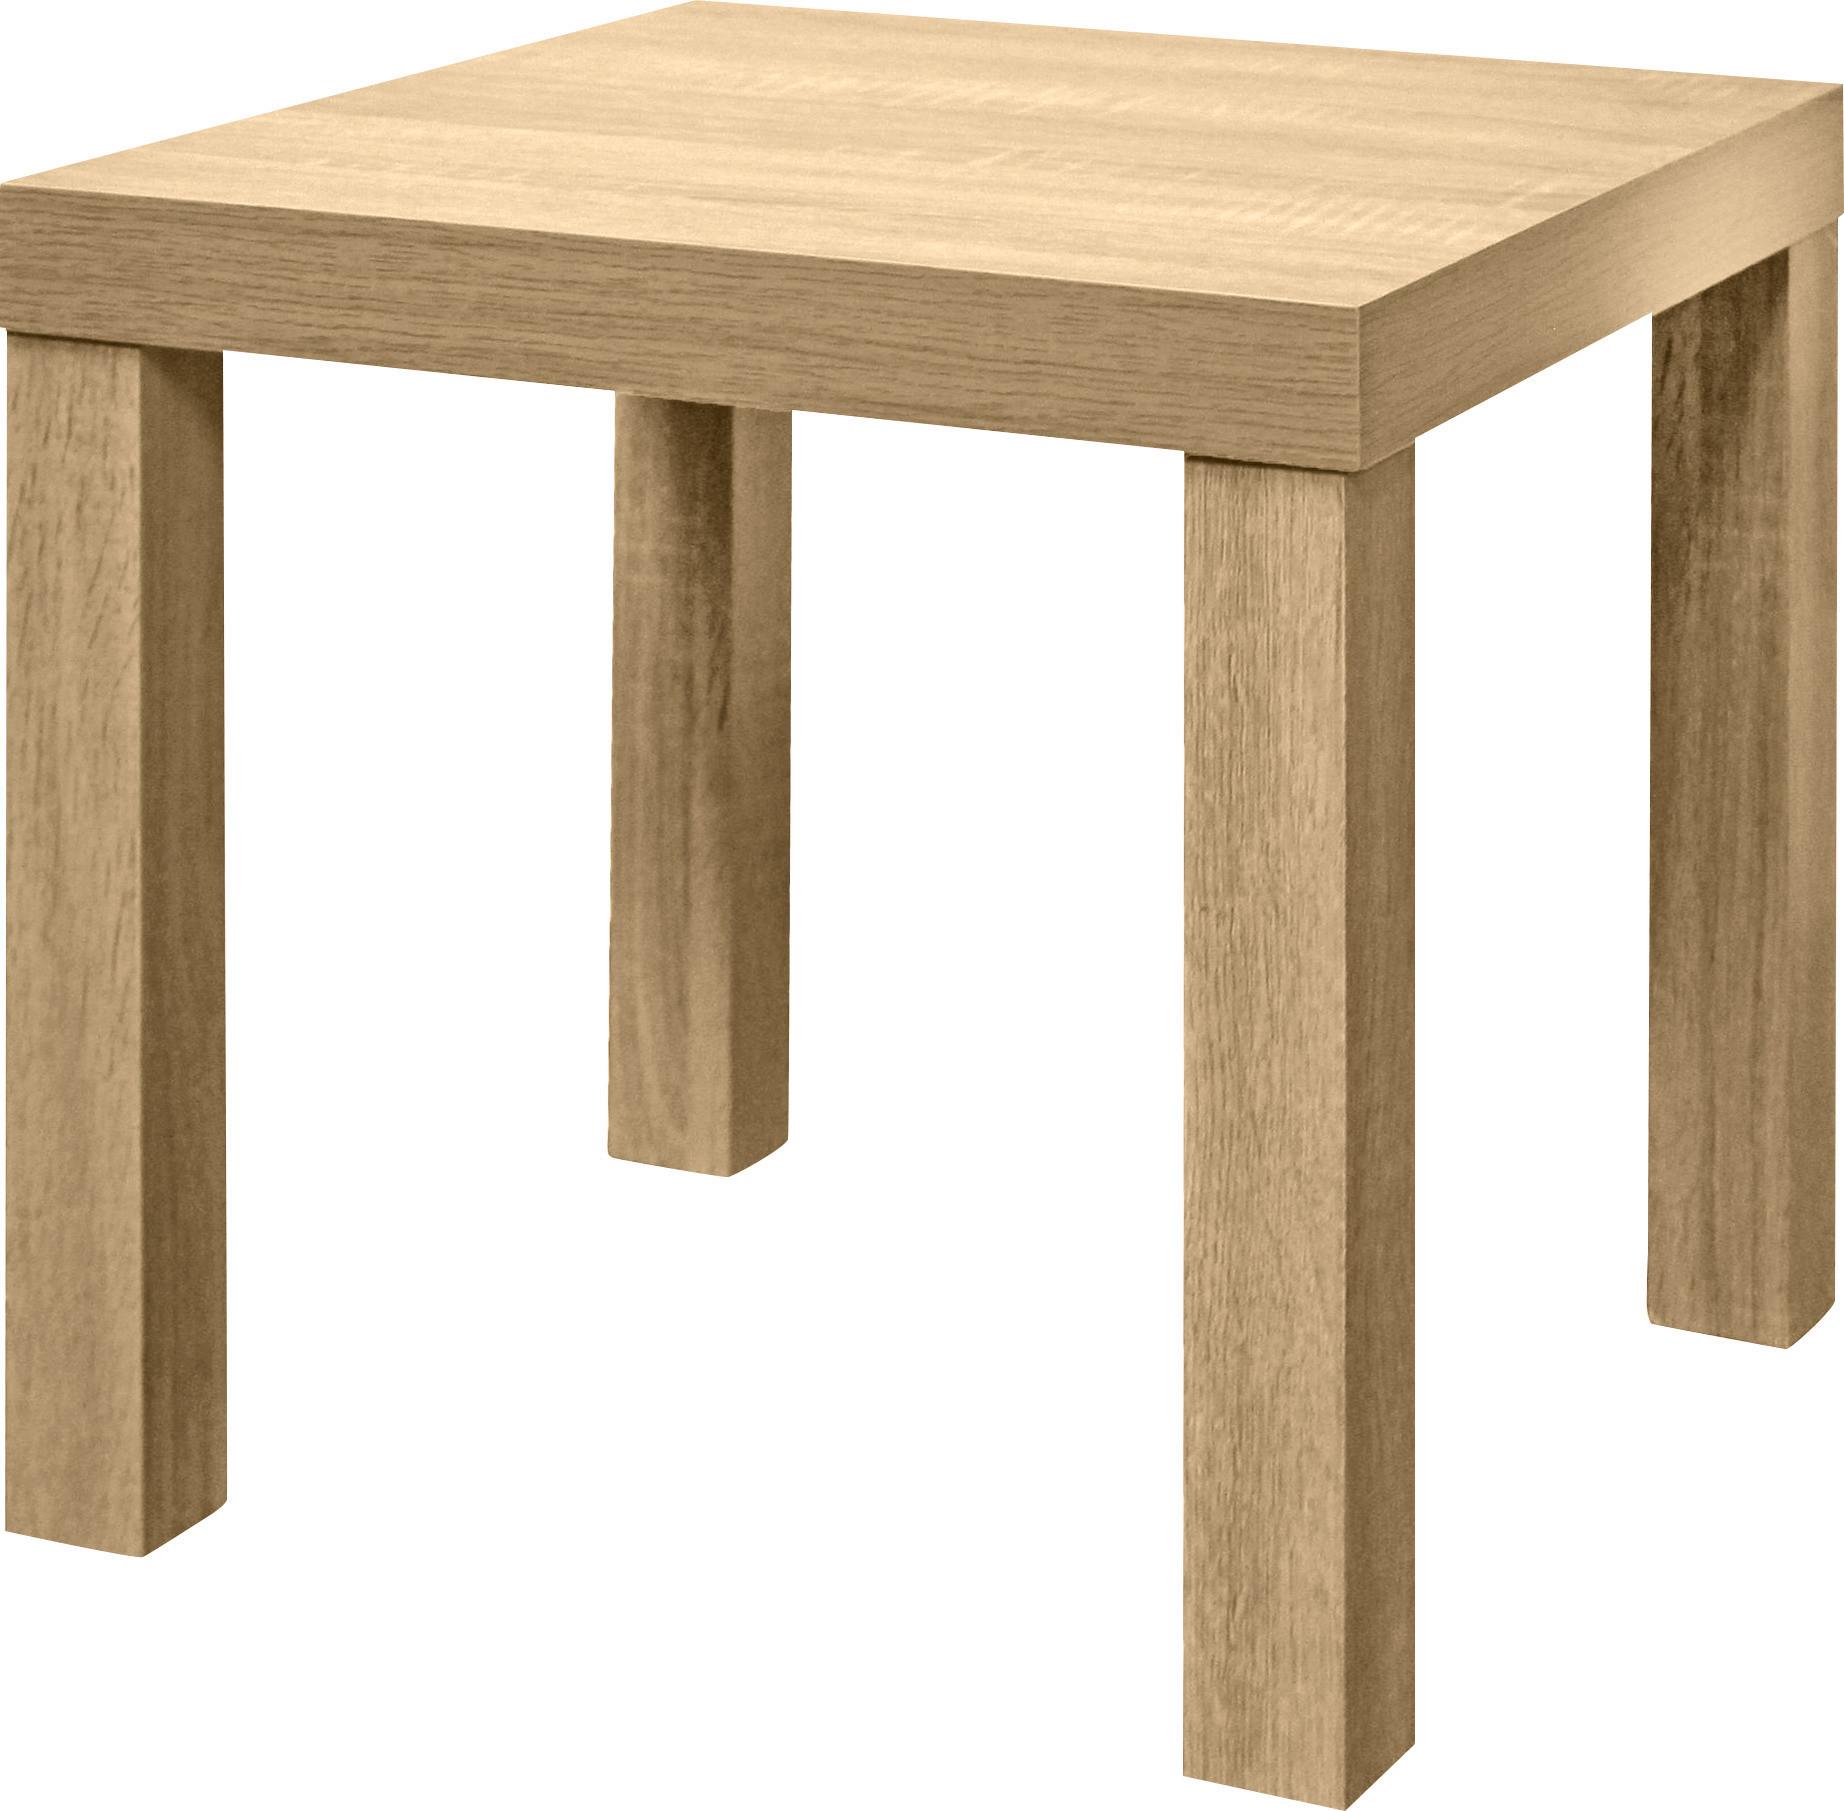 Odkládací Stolek Normen *cenovy Trhak* - Sonoma dub, Moderní, kompozitní dřevo (39/40/39cm) - Based